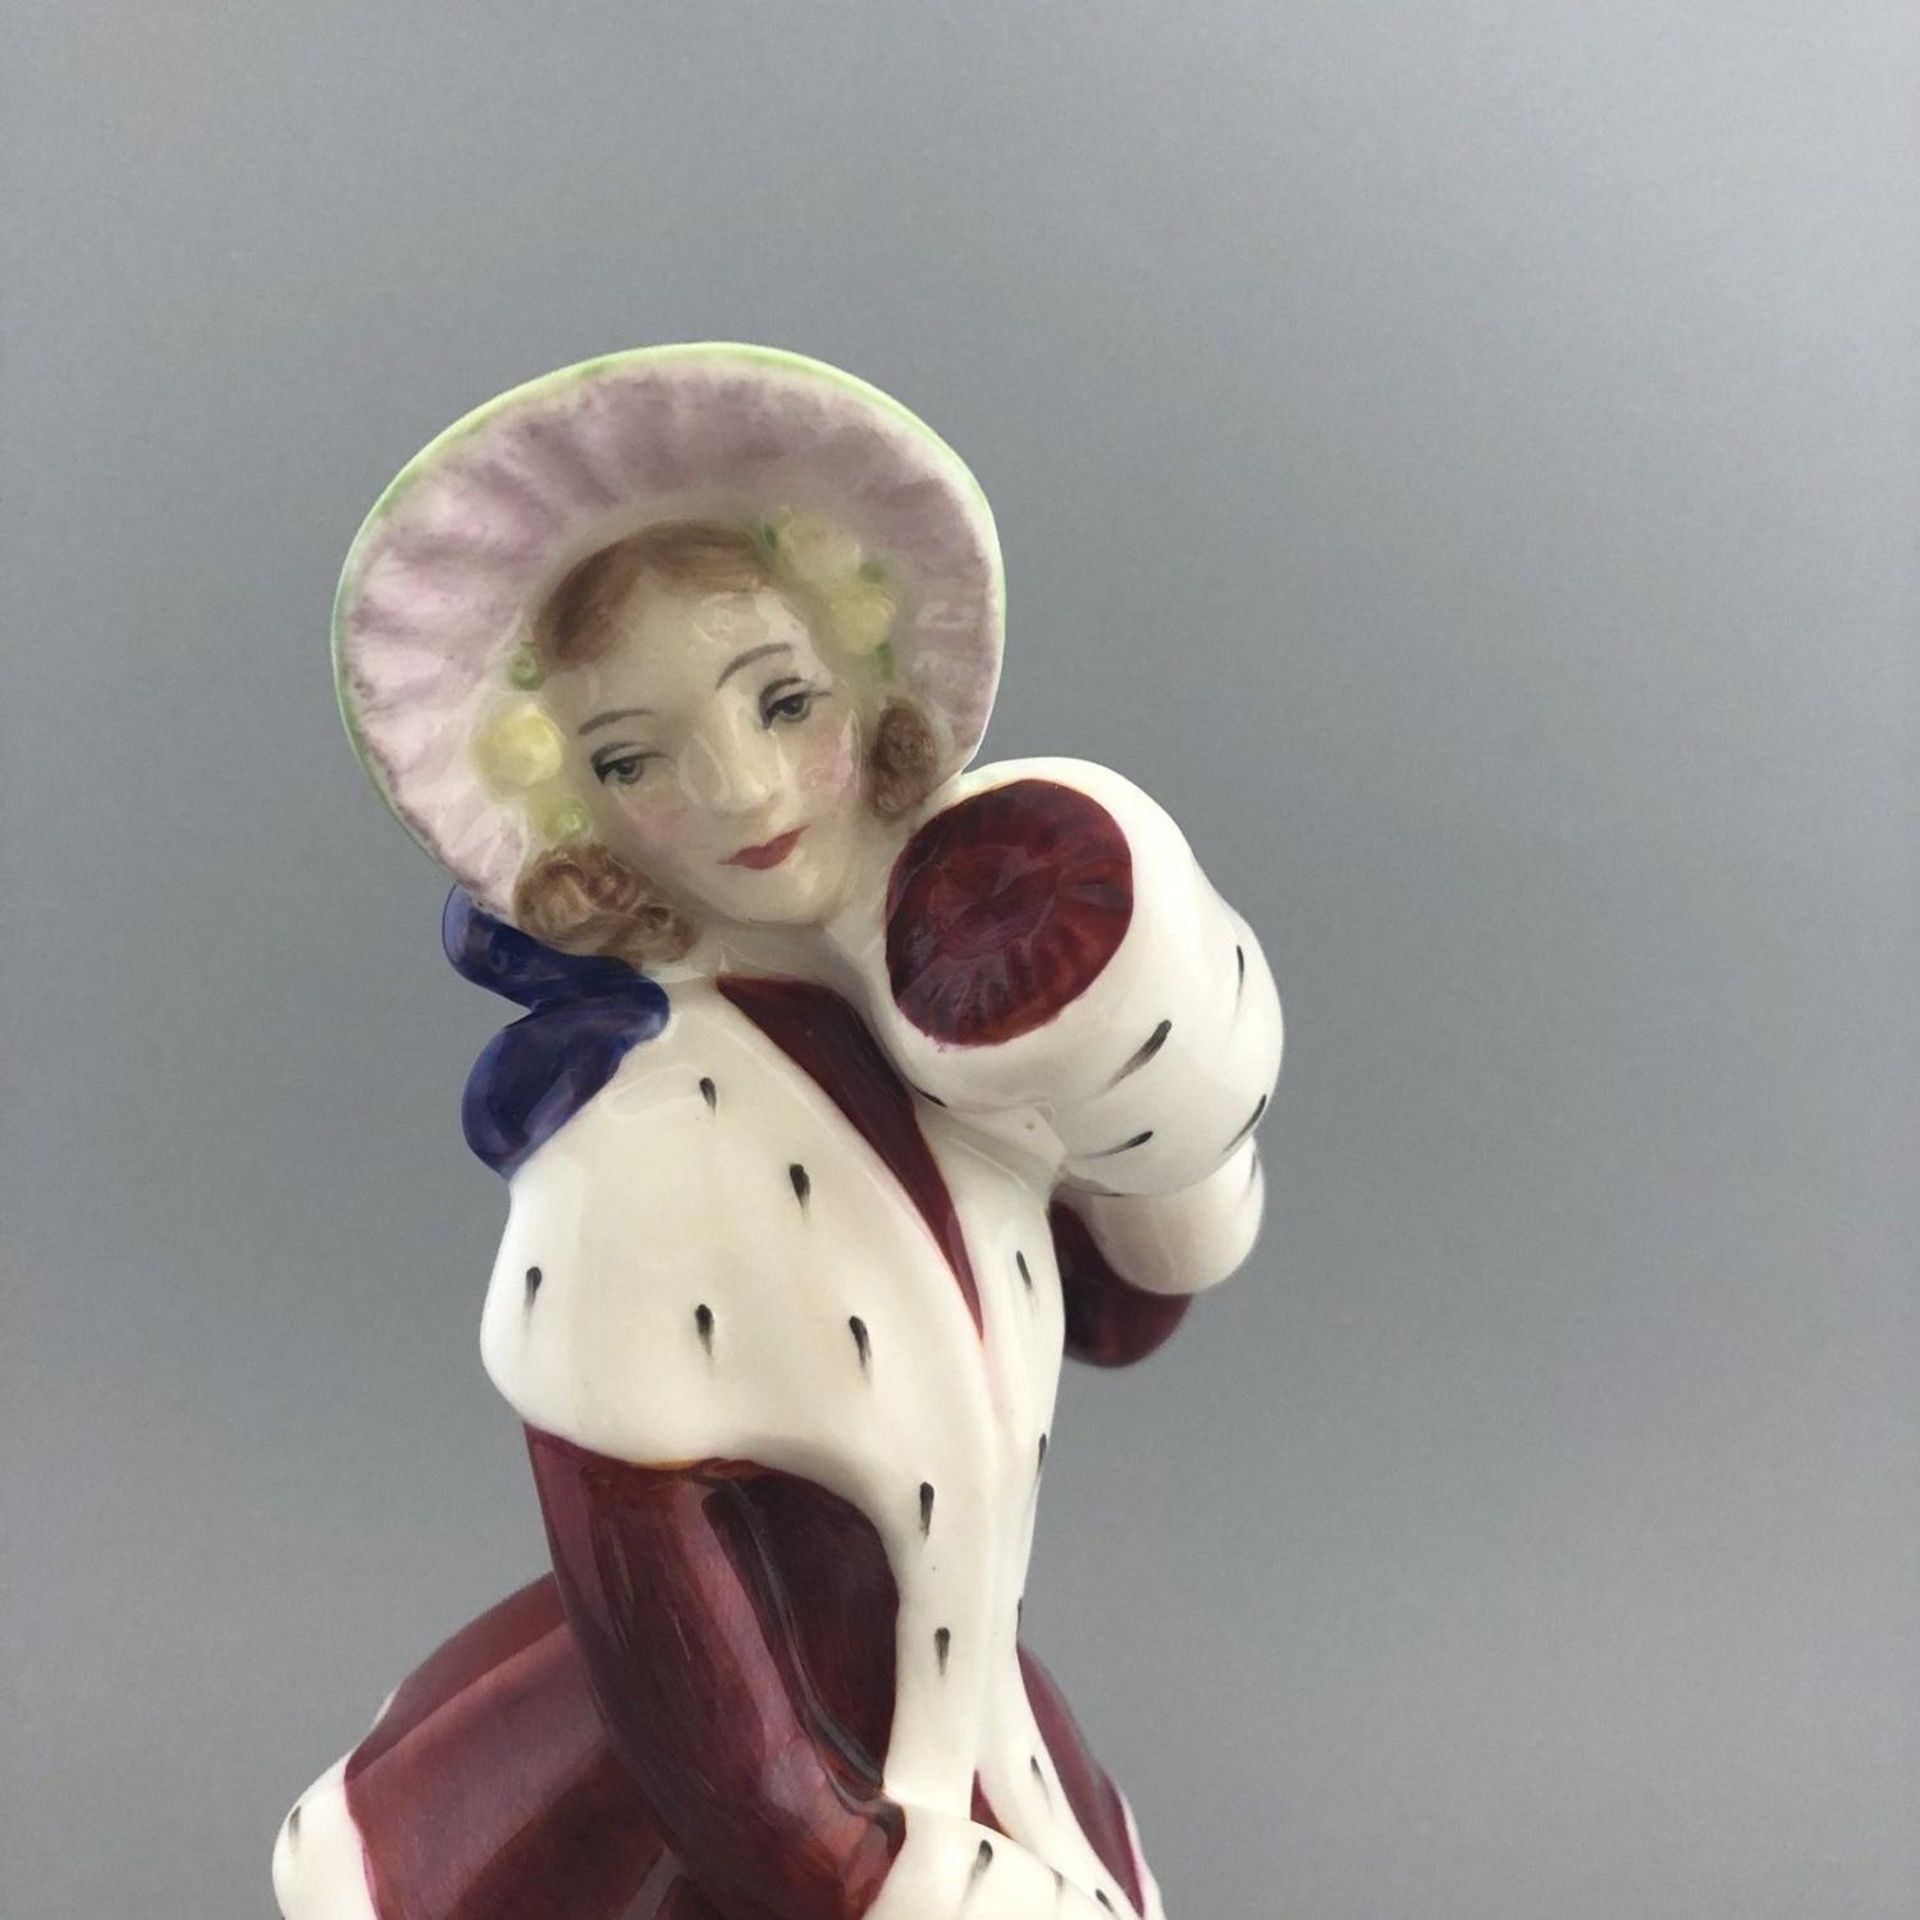 English Porcelain Figurine "Christmas Morn" - Royal Doulton HN 1992 - Image 3 of 4